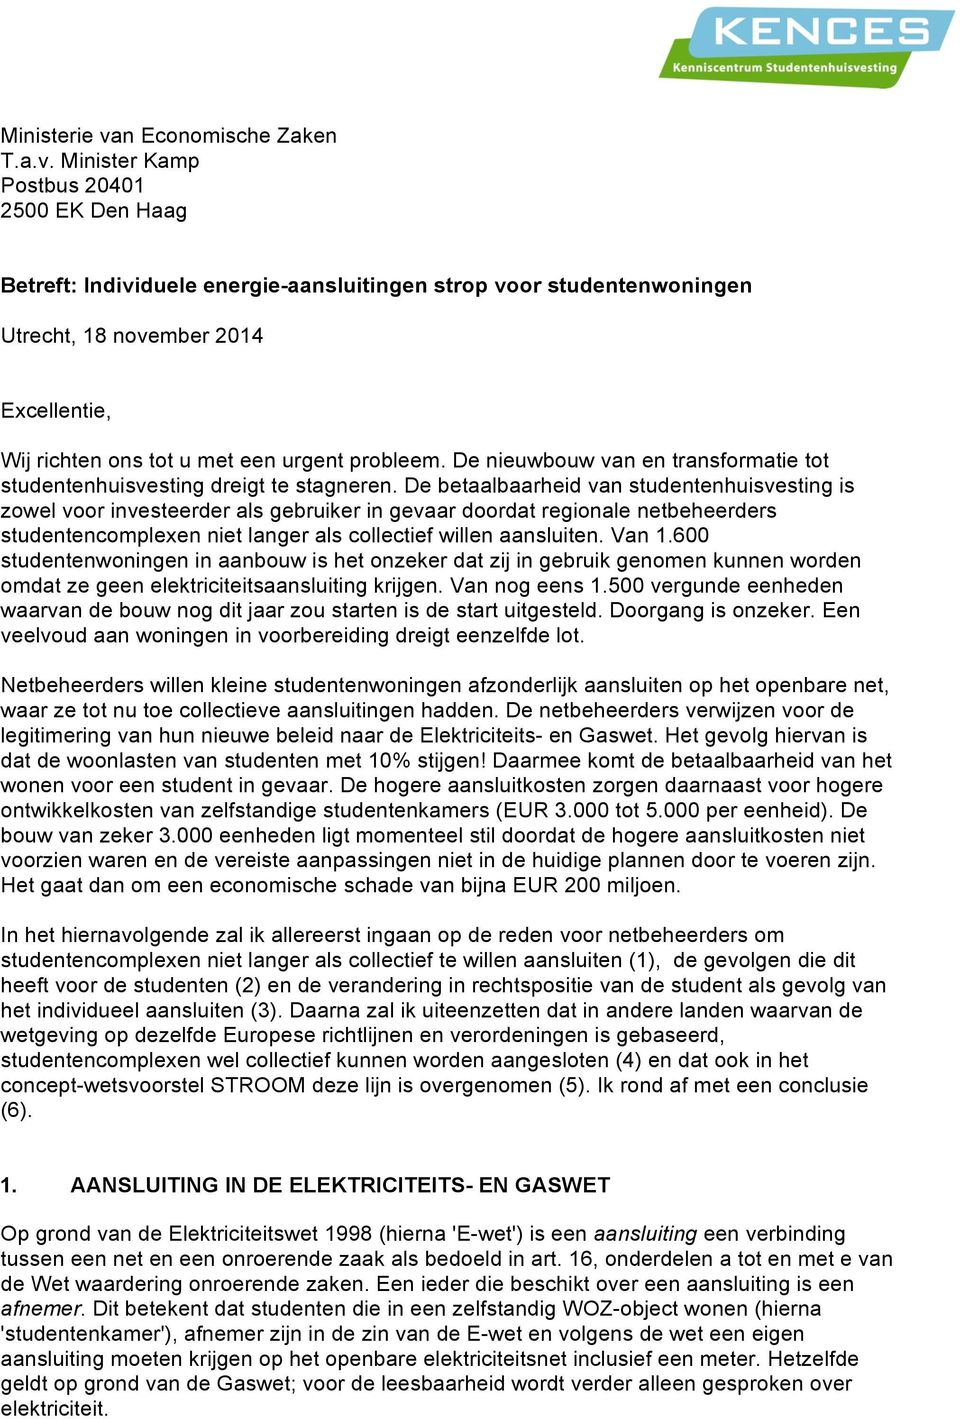 Minister Kamp Postbus 20401 2500 EK Den Haag Betreft: Individuele energie-aansluitingen strop voor studentenwoningen Utrecht, 18 november 2014 Excellentie, Wij richten ons tot u met een urgent